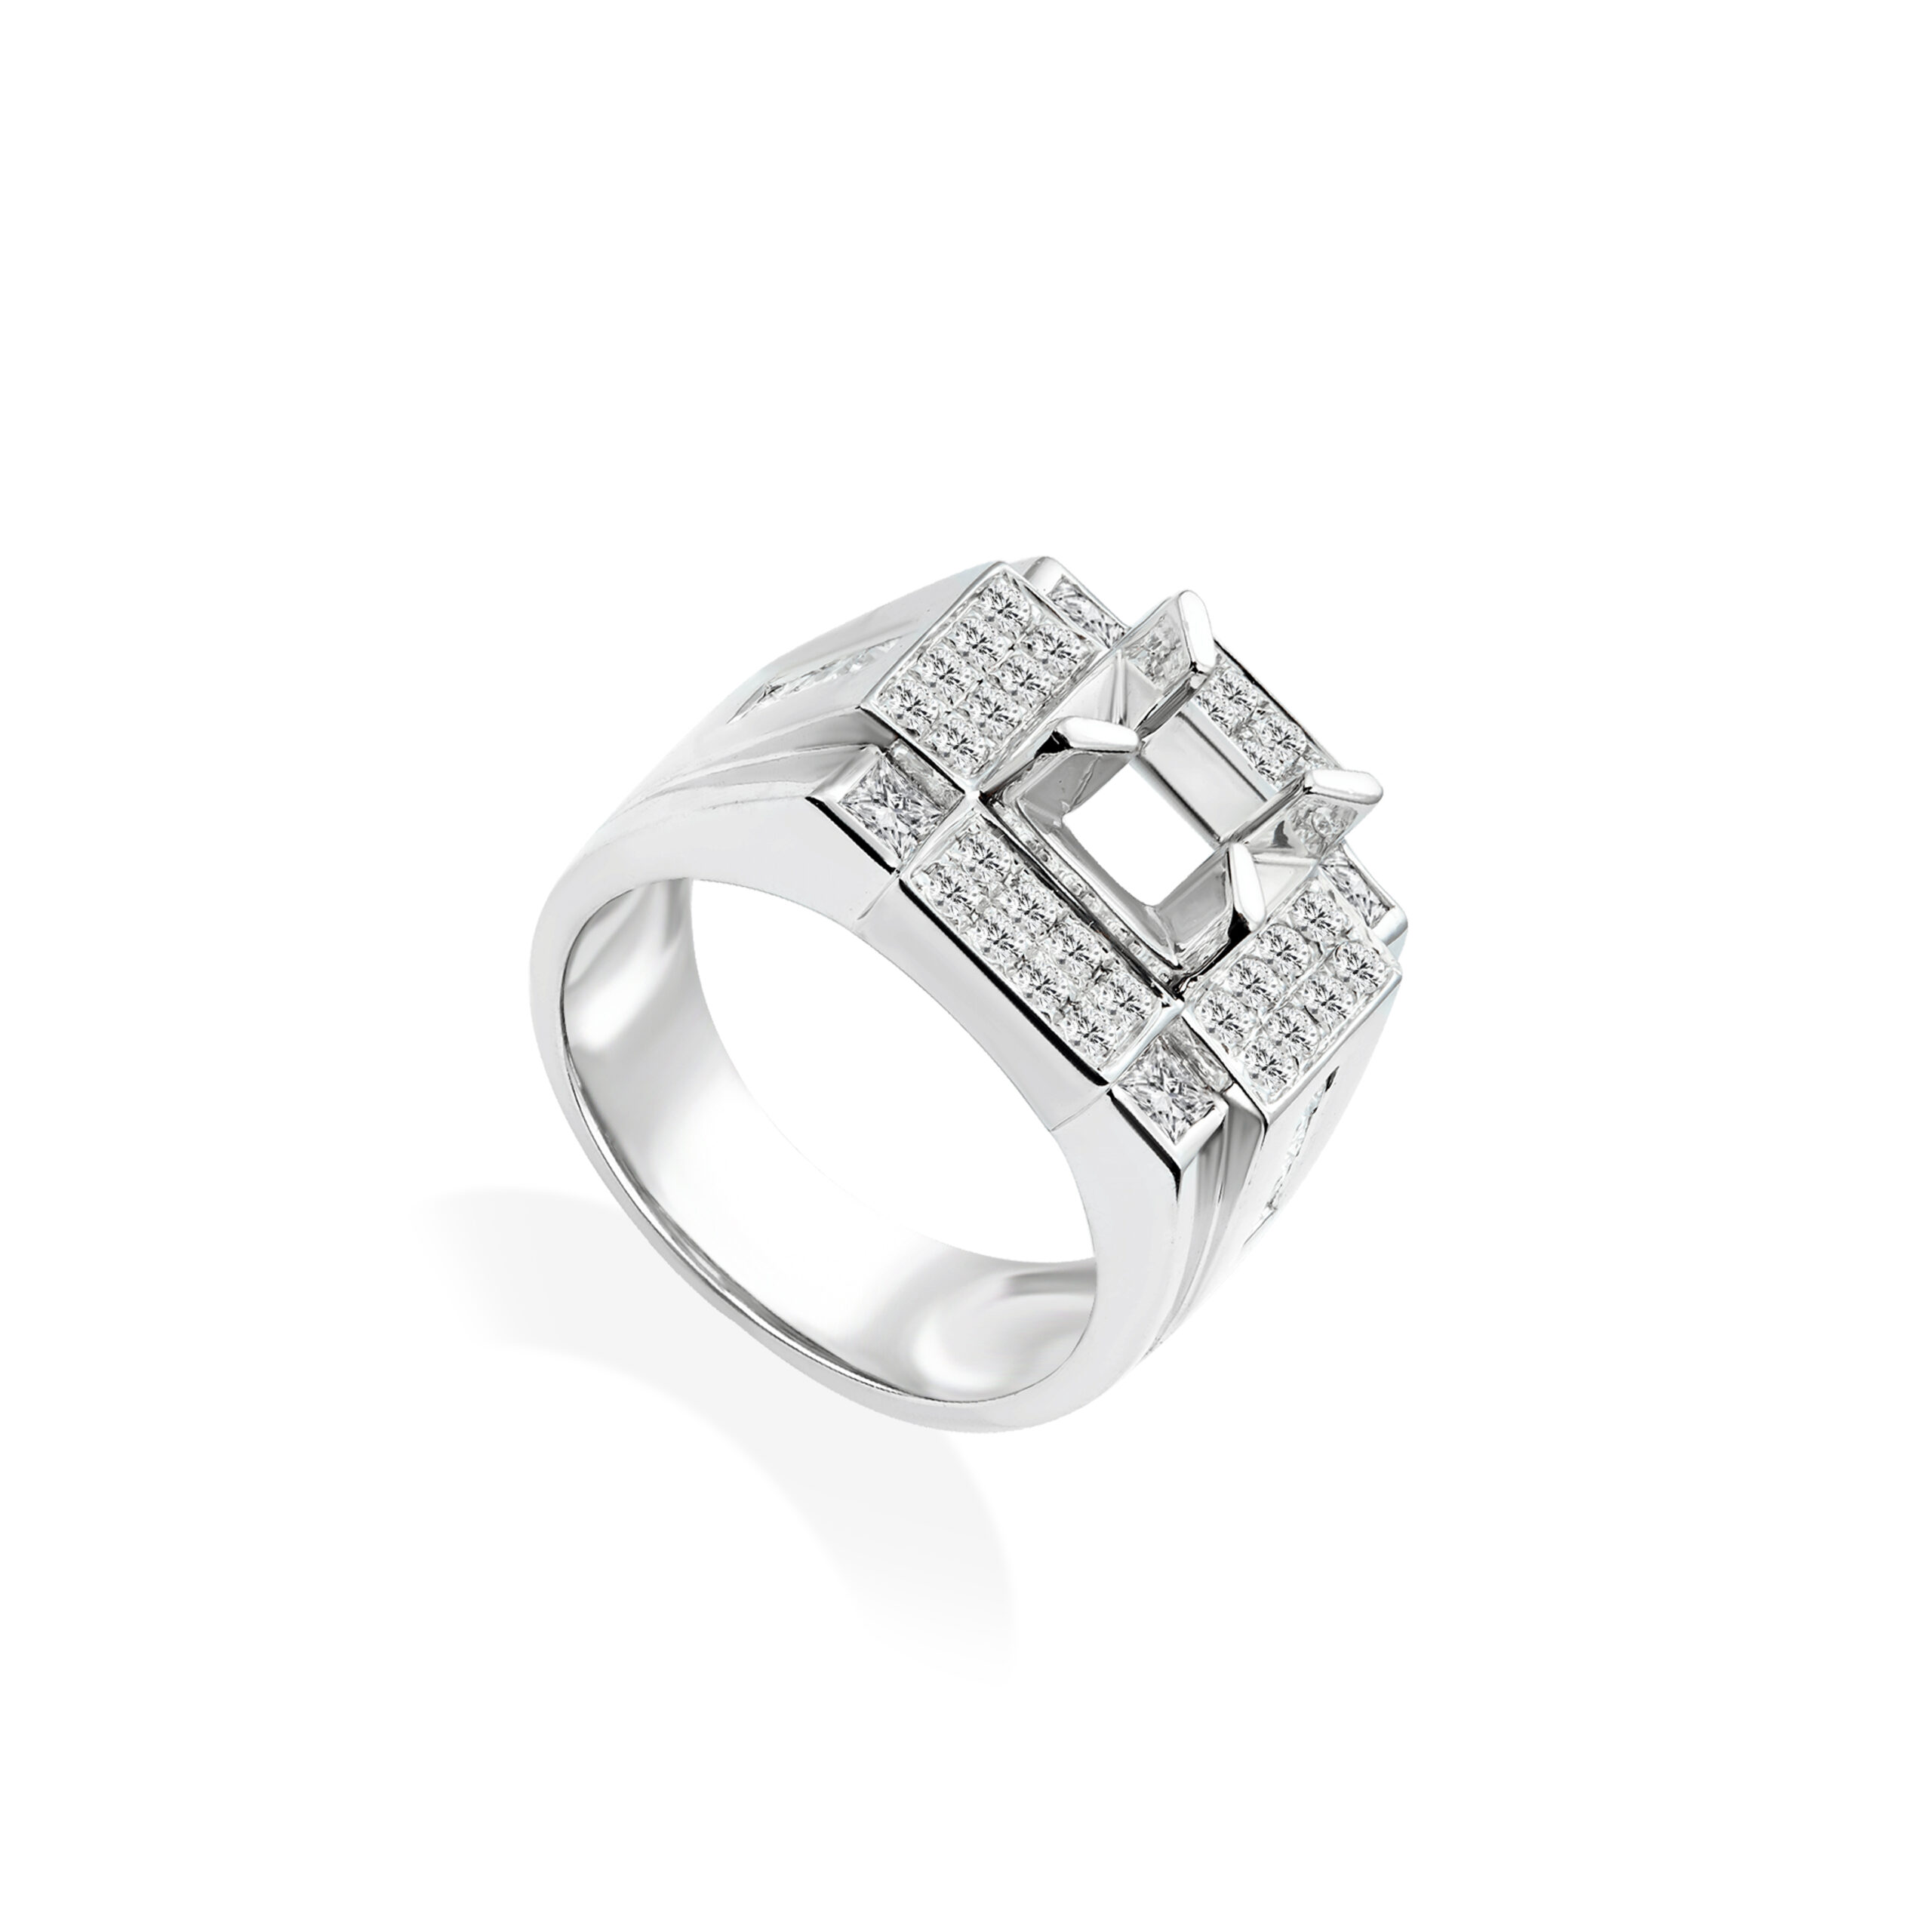 Nhẫn nam kim cương vàng trắng 14k pnj ddddw007539 | pnj.com.vn